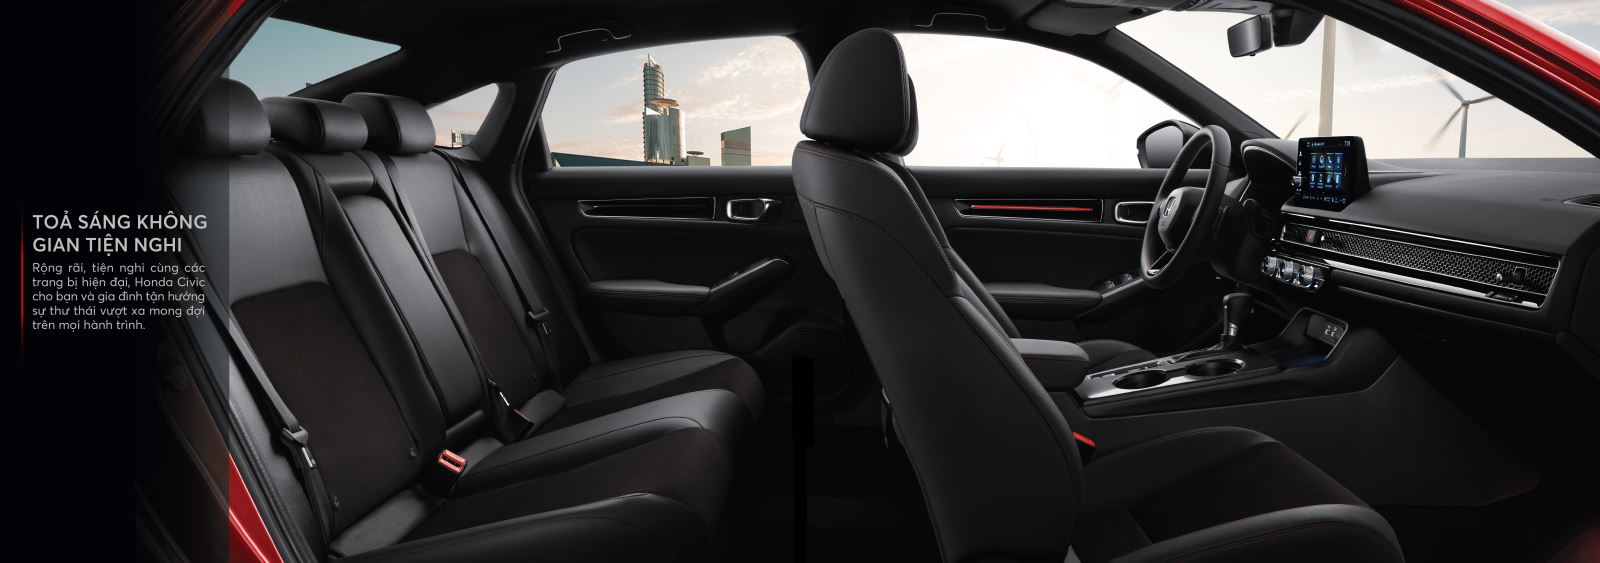 Nội thất Honda Civic thế hệ 11 cho cảm giác tiện nghi thoải mái trên những chuyến hành trình dài